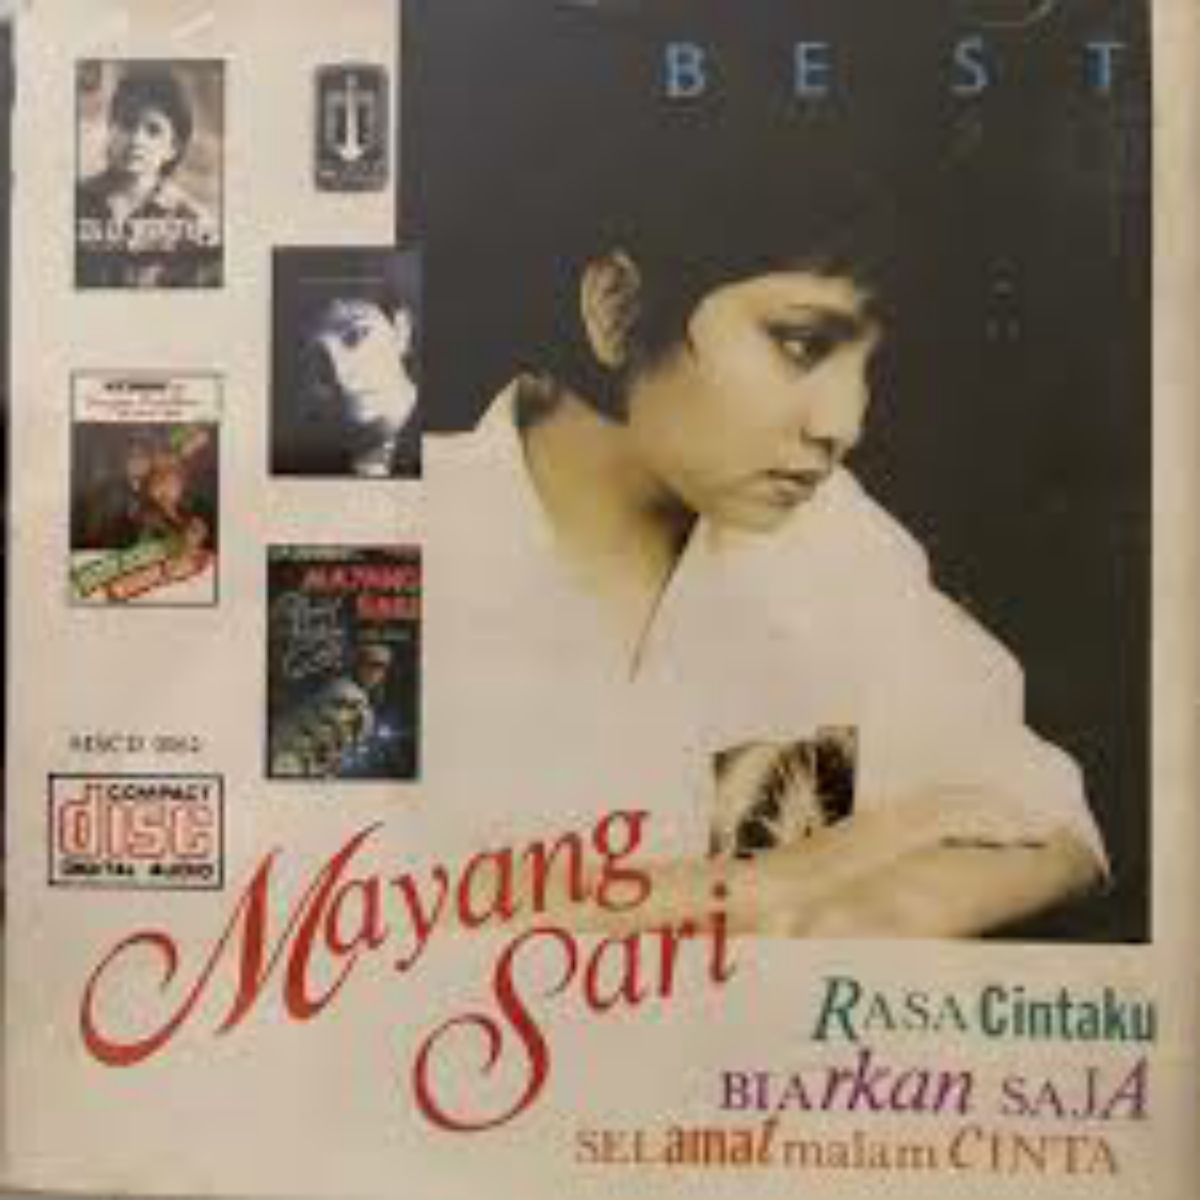 Set Mayang Sari Cover mp3